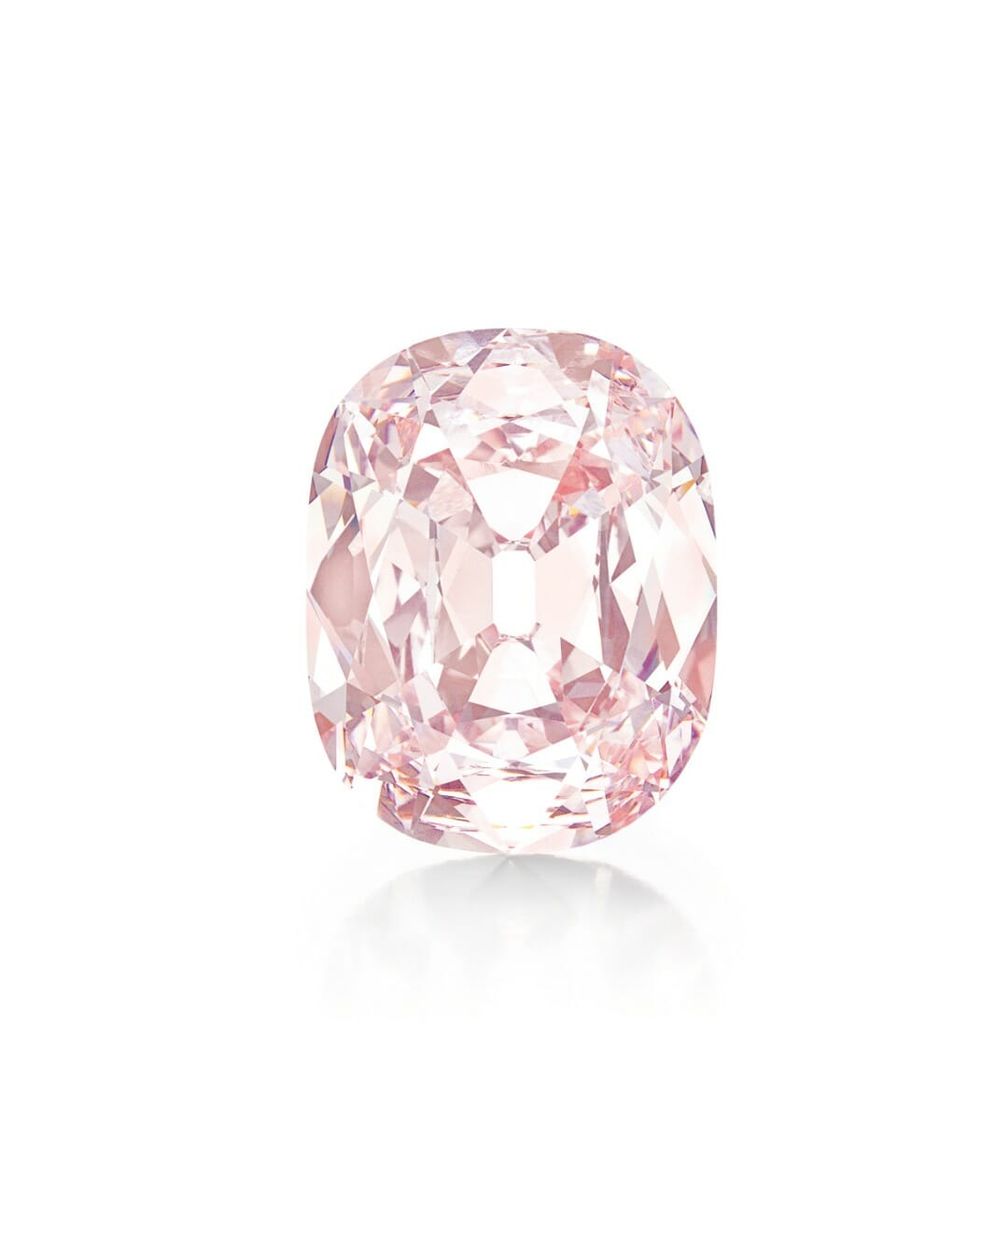 История знаменитого розового бриллианта Принси